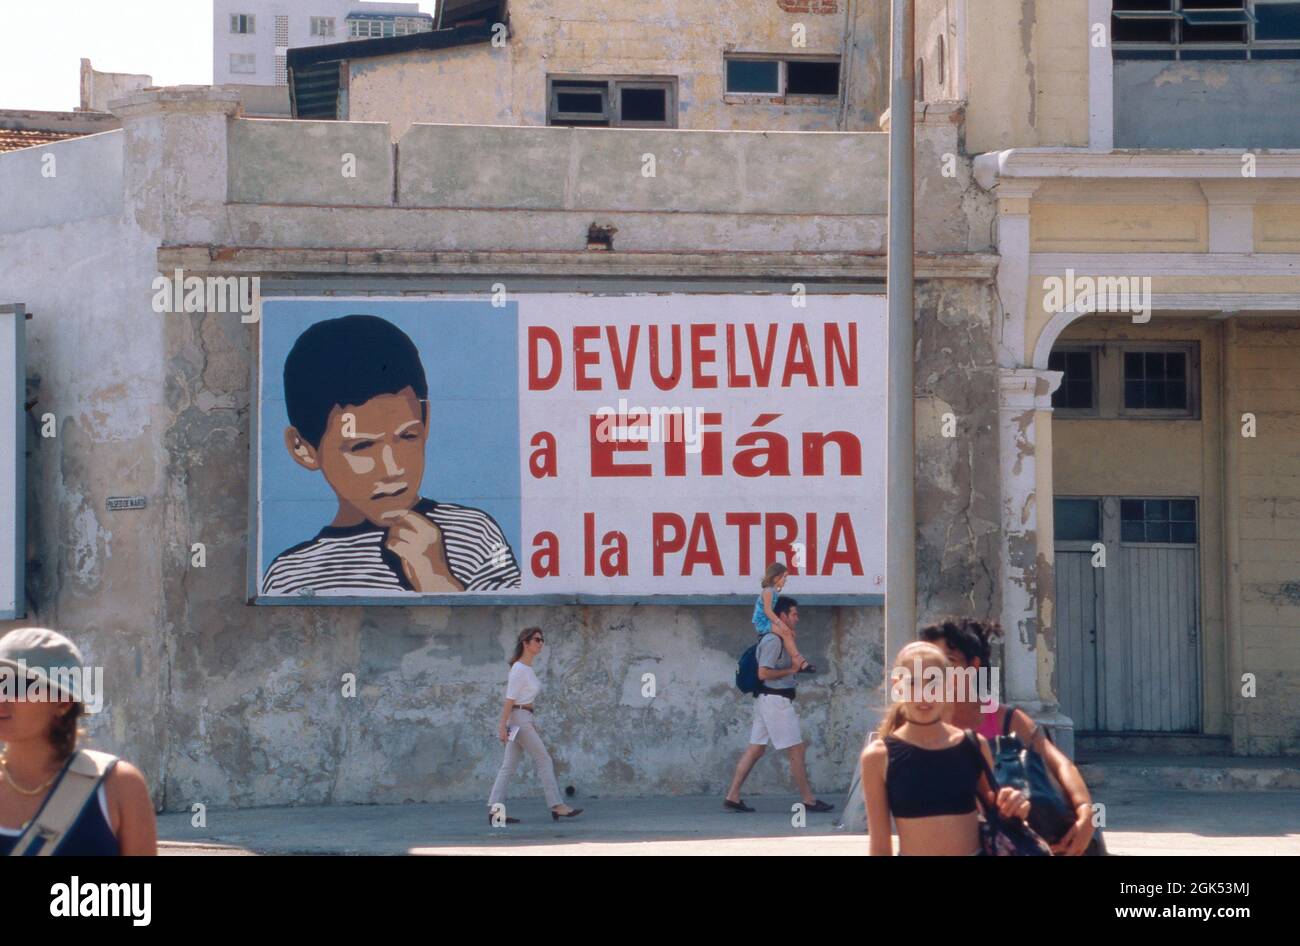 Plakat zur Herausgabe eines entführten Jungen auf Kuba, 2000. Display for the restitution of a boy at Cuba, 2000. Stock Photo